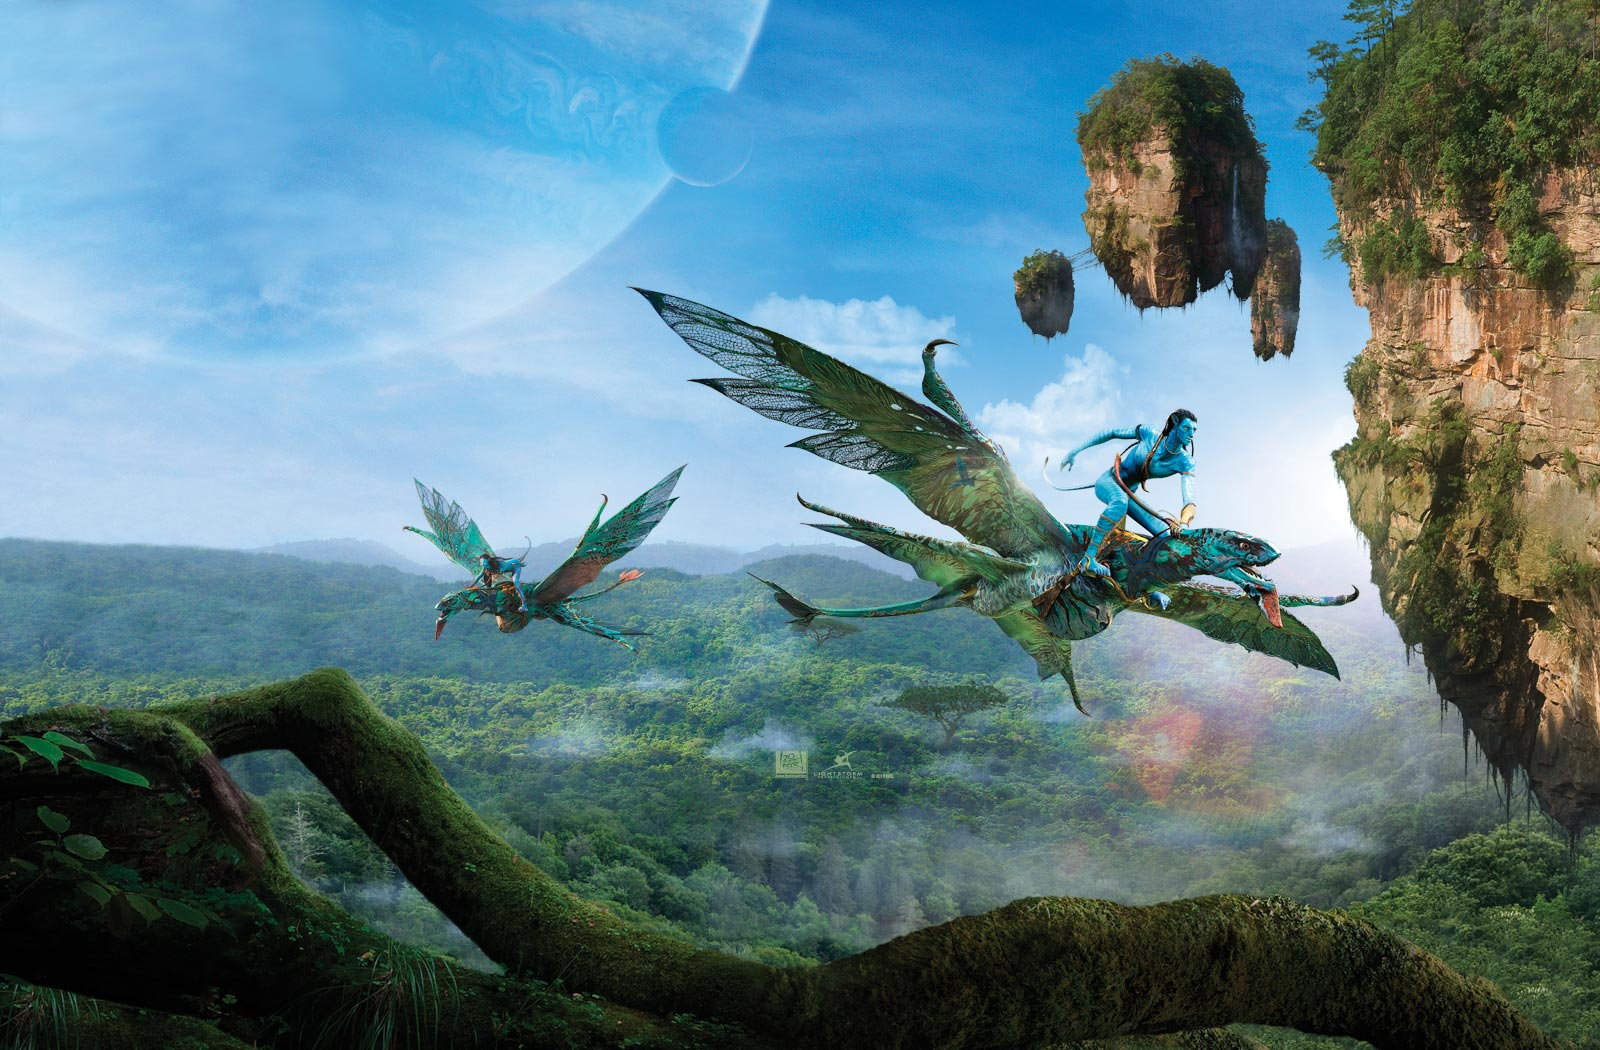 Opowiadanie opierające się na świecie z filmu ,,Avatar"